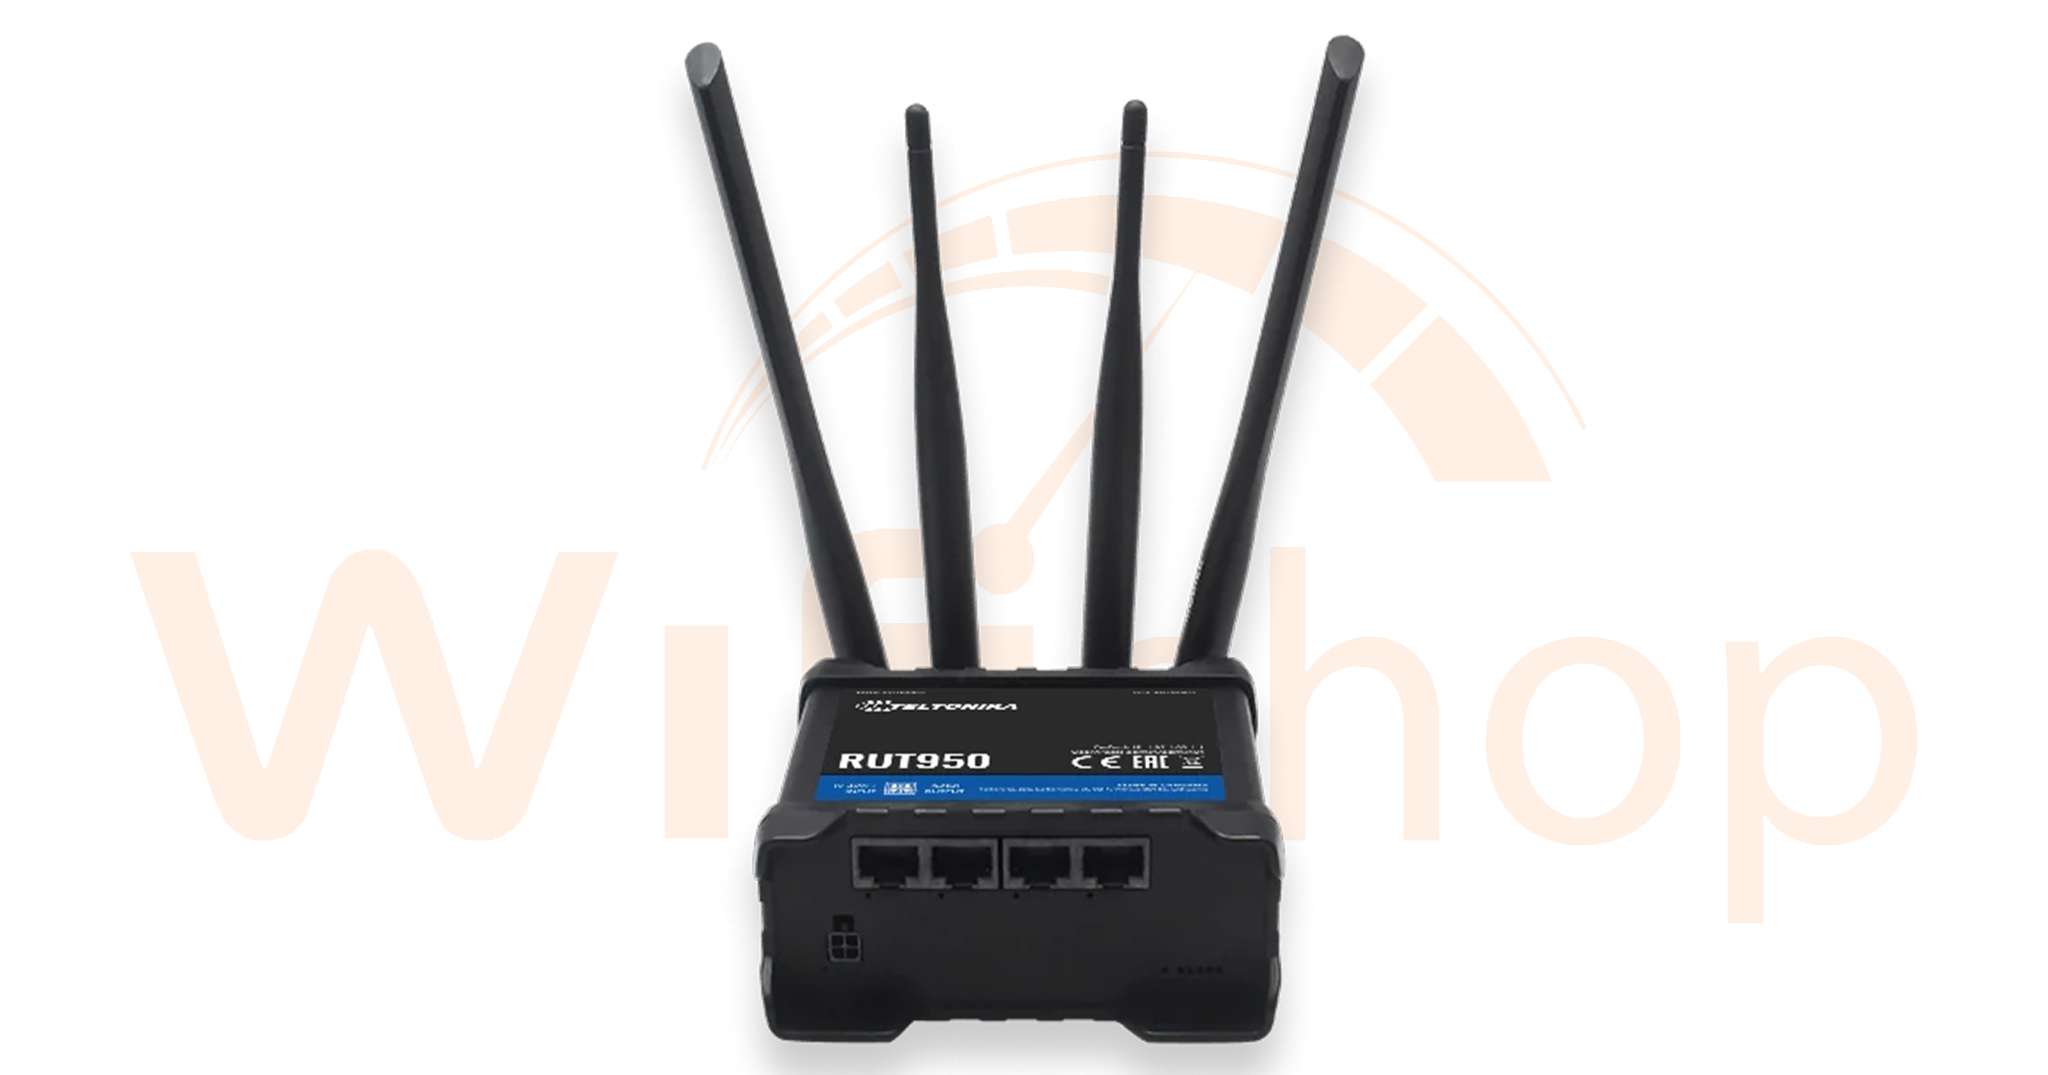 Bộ Phát Wifi 4G Công Nghiệp Teltonika RUT950 Hỗ Trợ 2 Sim kết nối 100 user